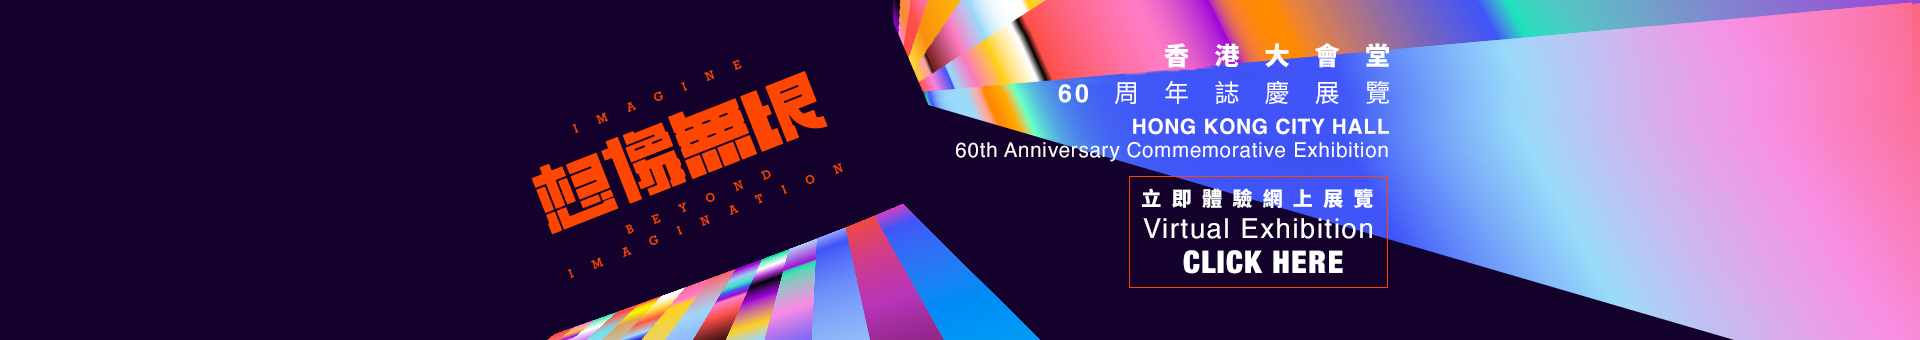 香港大會堂60周年誌慶展覽《想像無垠》【網上展覽】